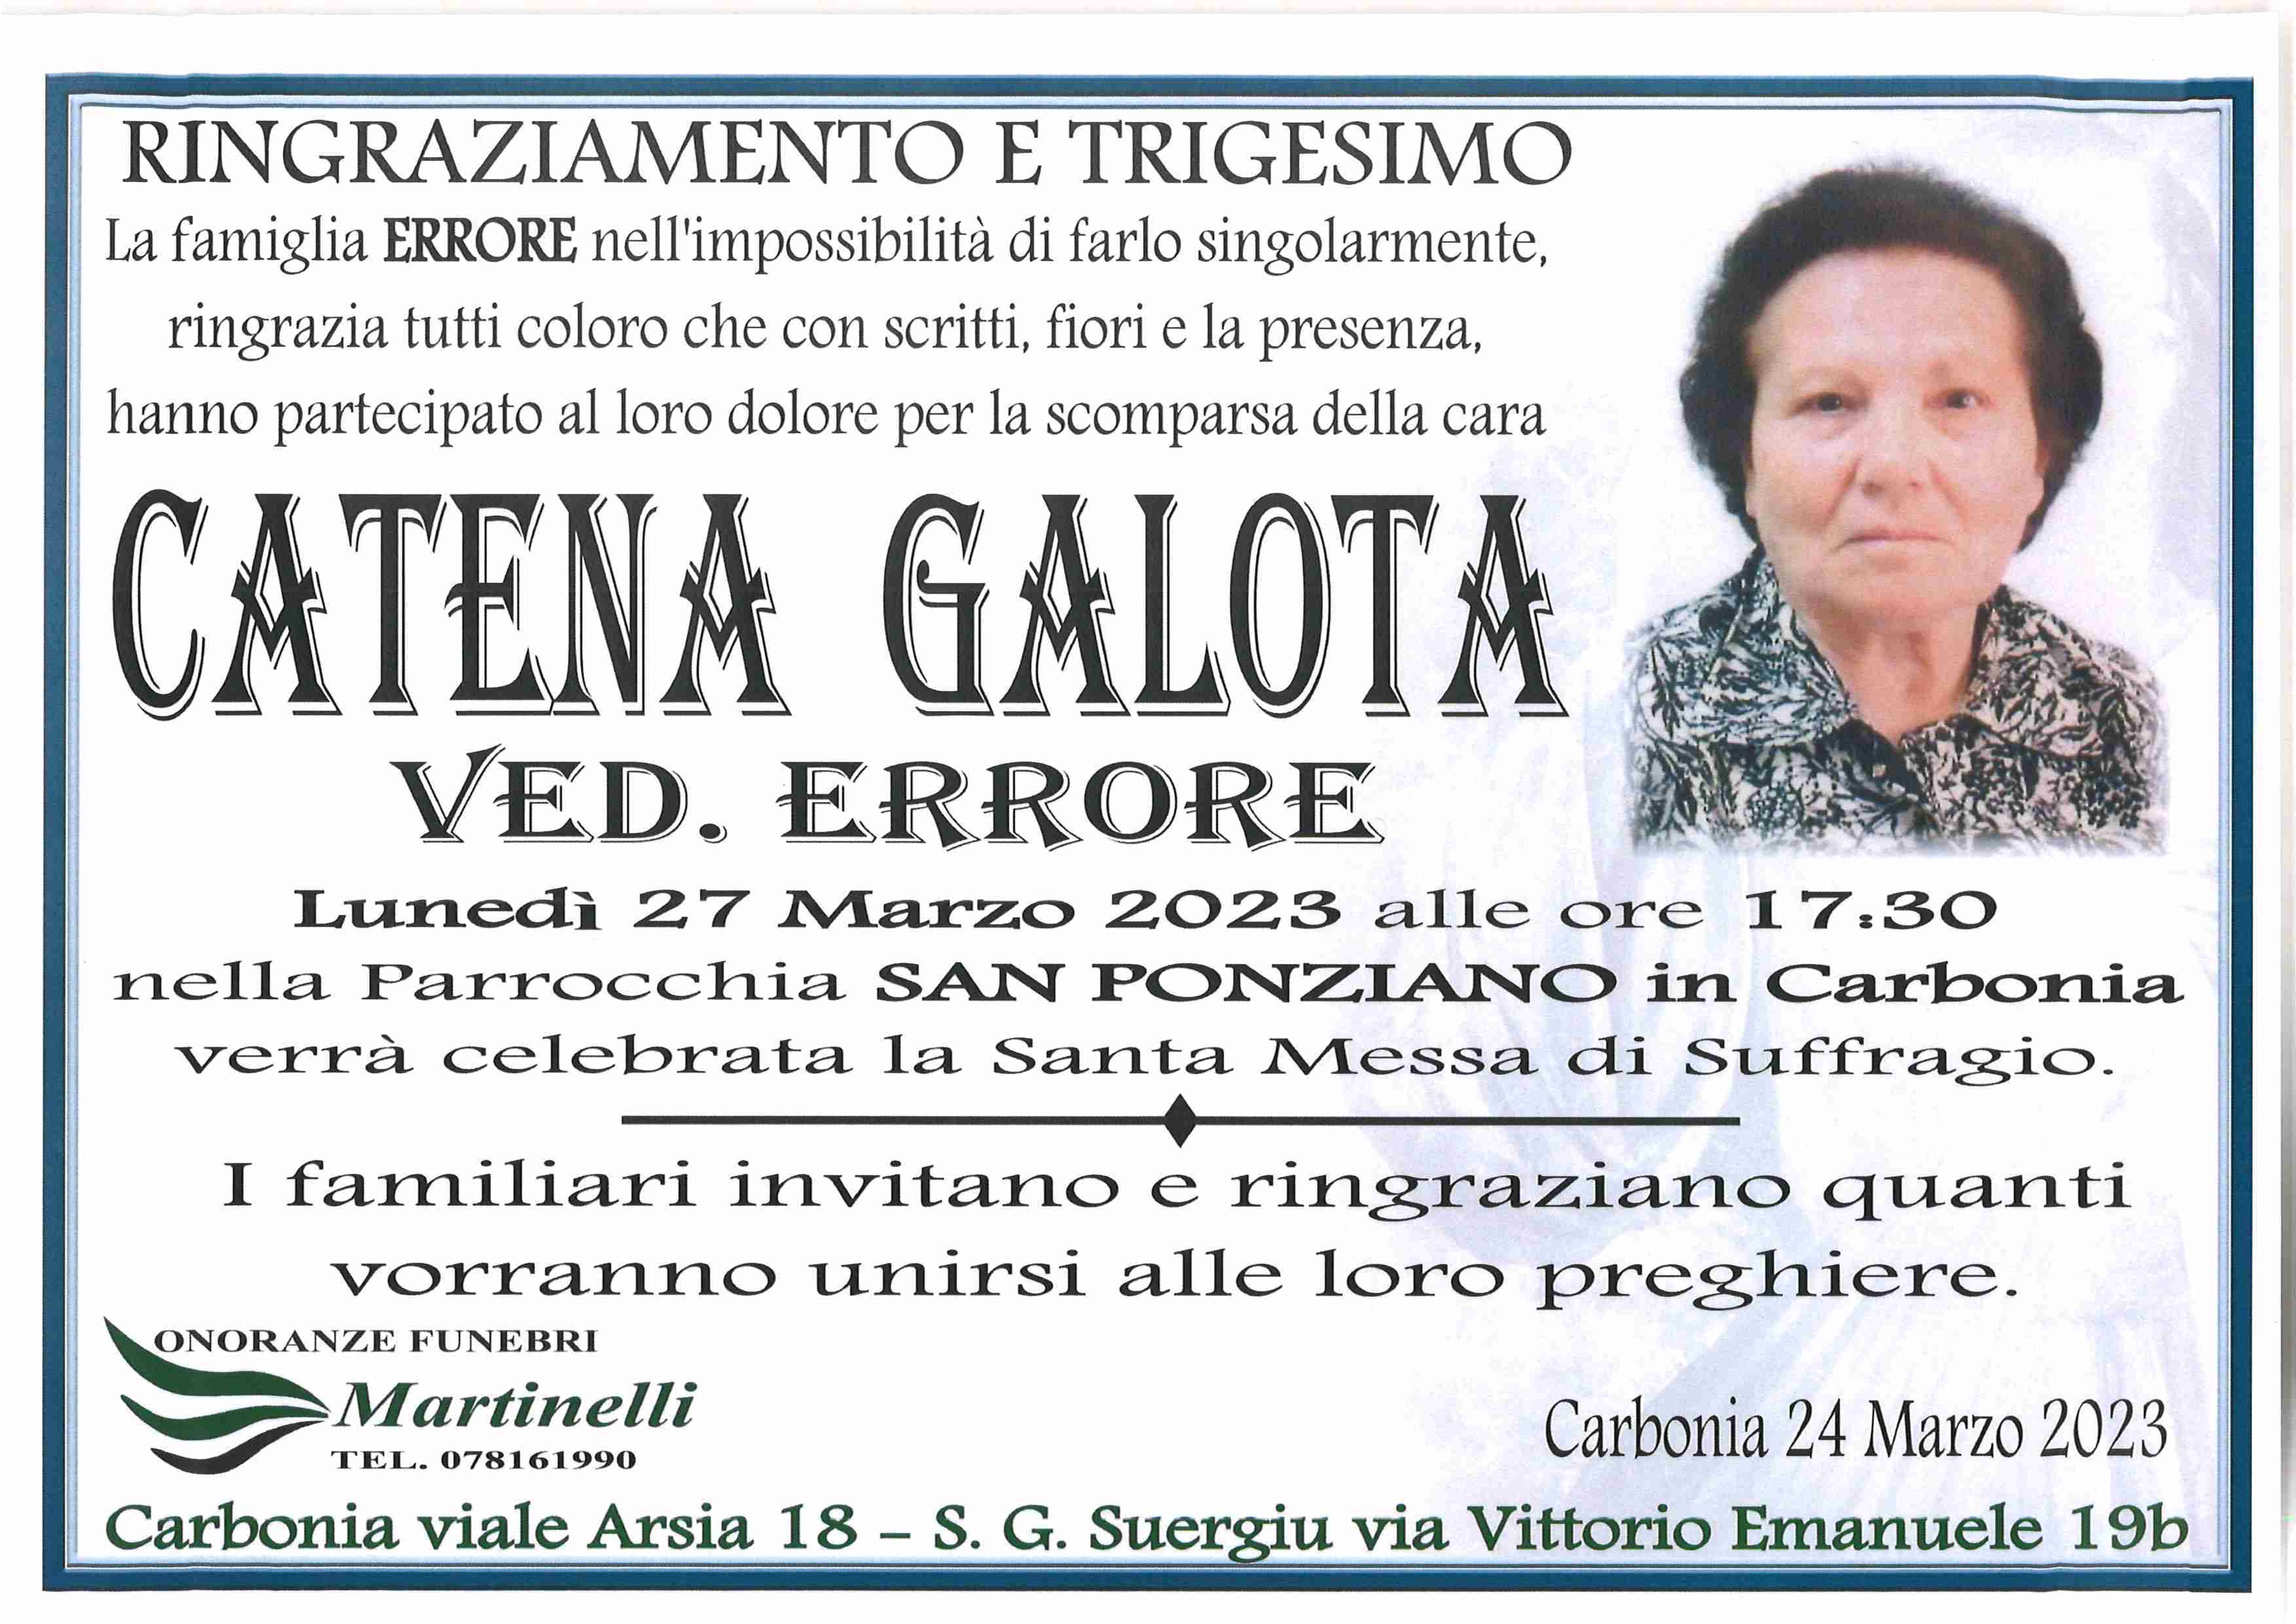 Catena Galota